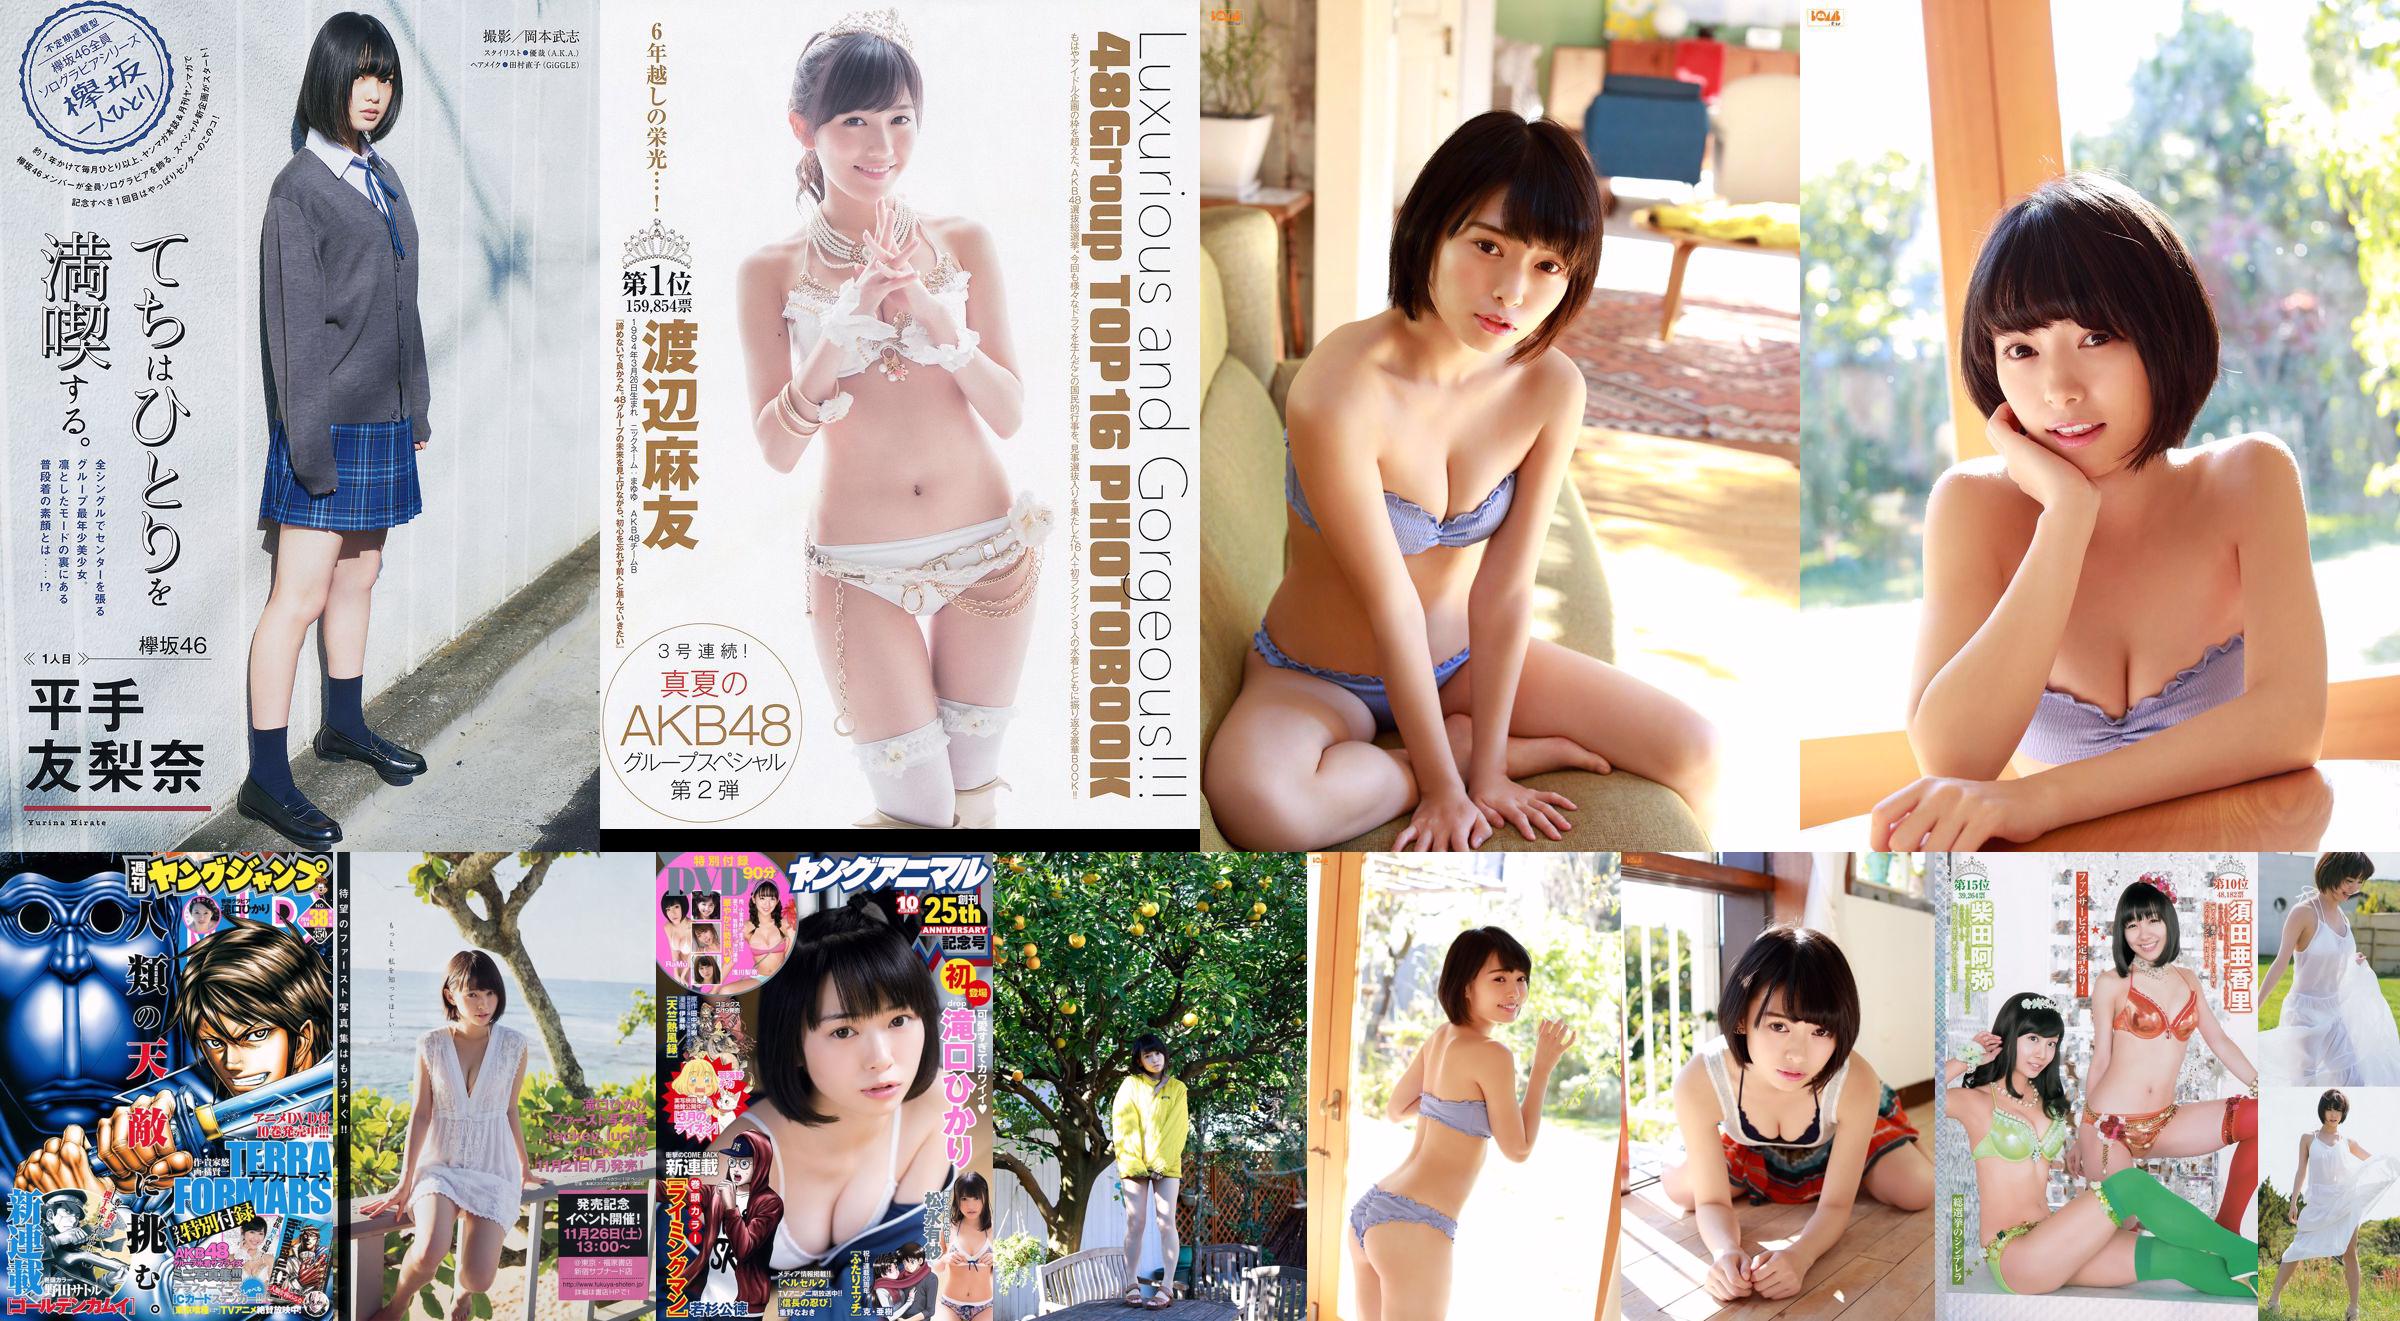 Hikari Takiguchi Hinako Kinoshita AKB48 Nonoka Ono [Wekelijkse jonge sprong] 2014 nr. 38 foto No.42268c Pagina 1